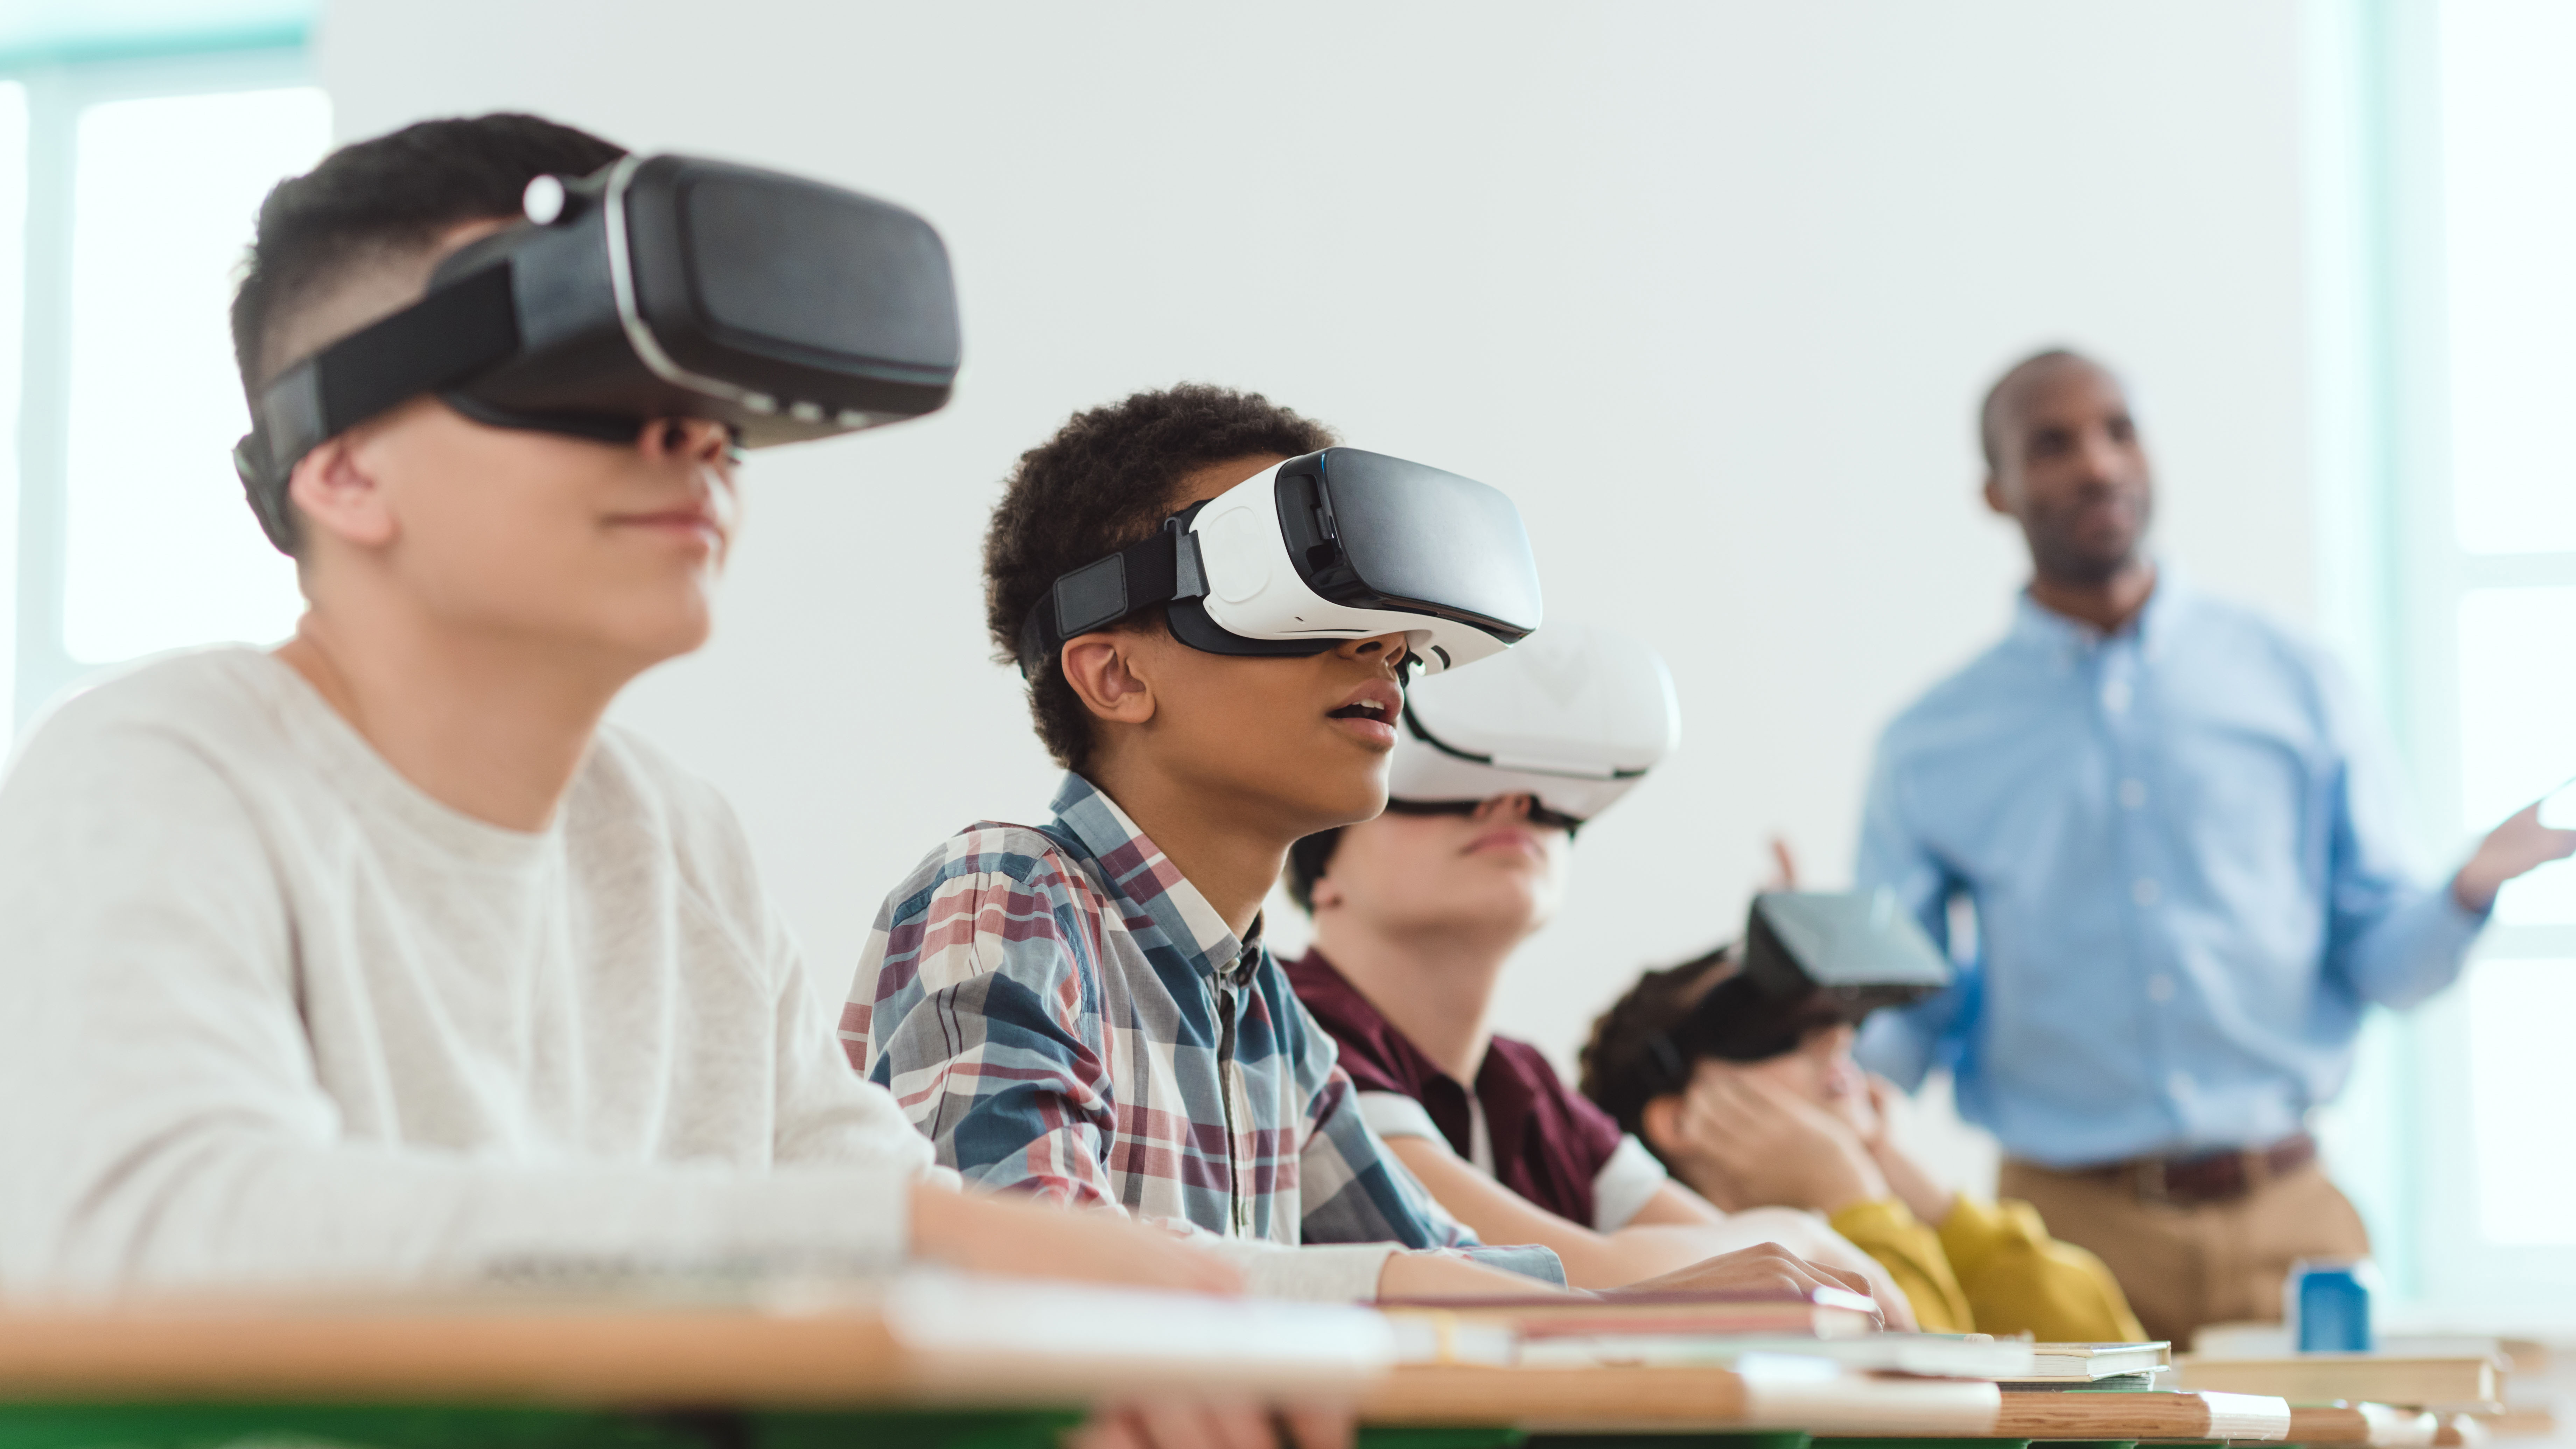 Образовательное развлечение. Виар технологии в образовании. Виртуальная реальность в образовании. Виртуальные очки в школе. Очки виртуальной реальности на уроке.